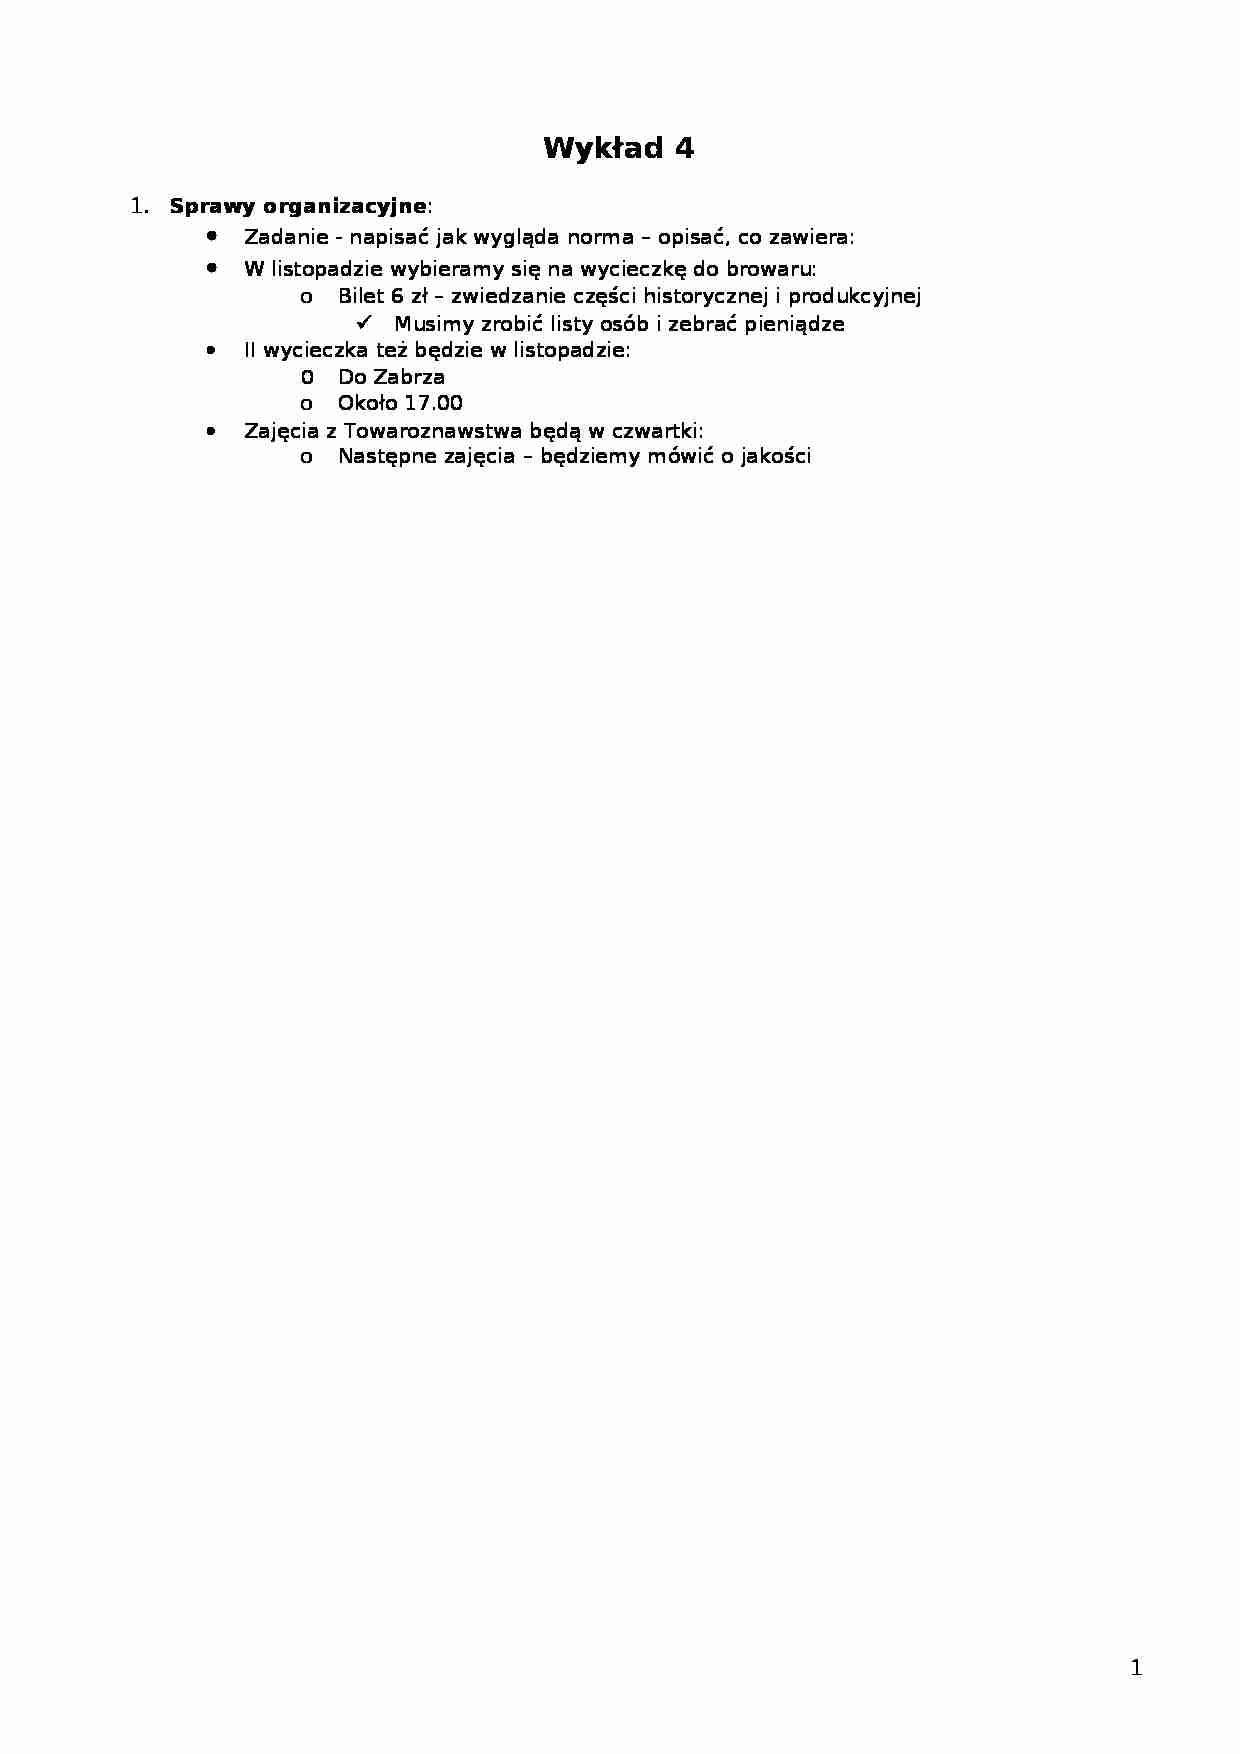 Wykład - syllabus z przedmiotu - strona 1